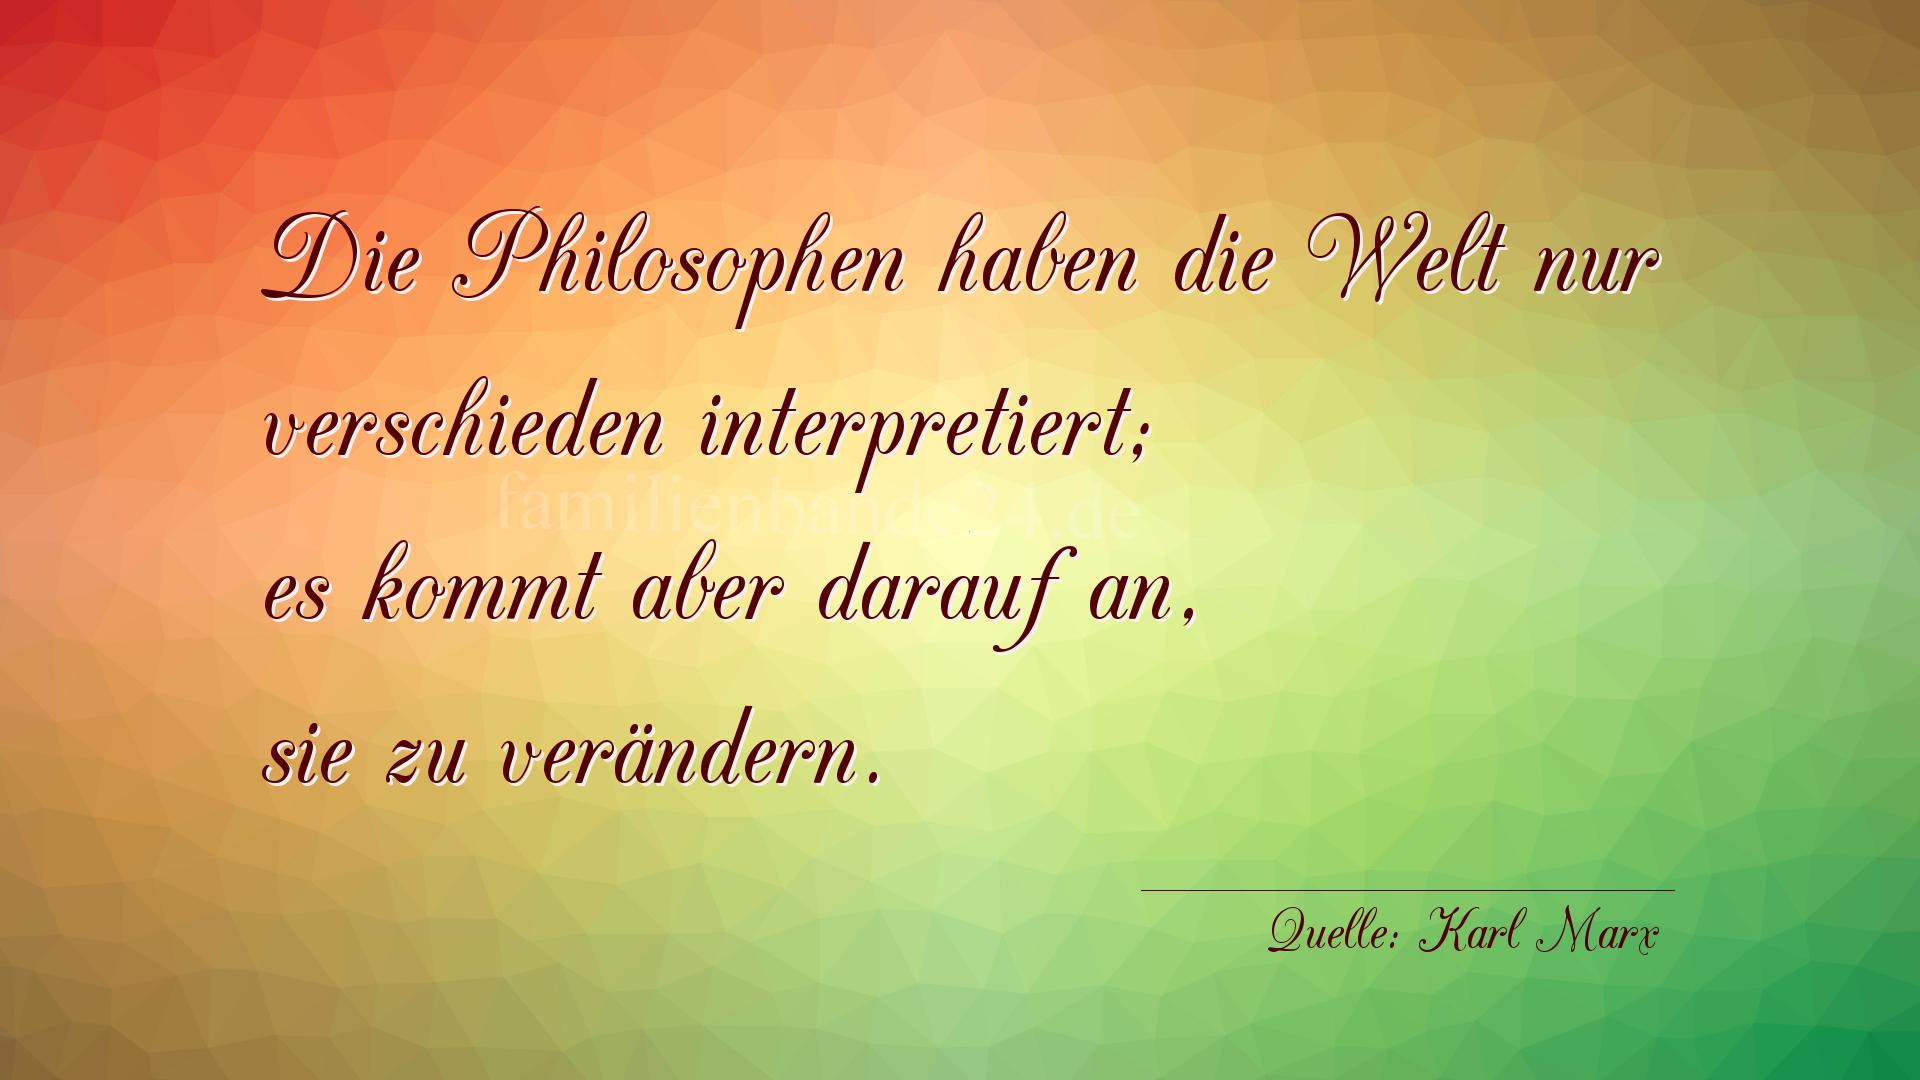 Aphorismus Nr. 1269 (von Karl Marx): "Die Philosophen haben die Welt nur verschieden interpreti [...]